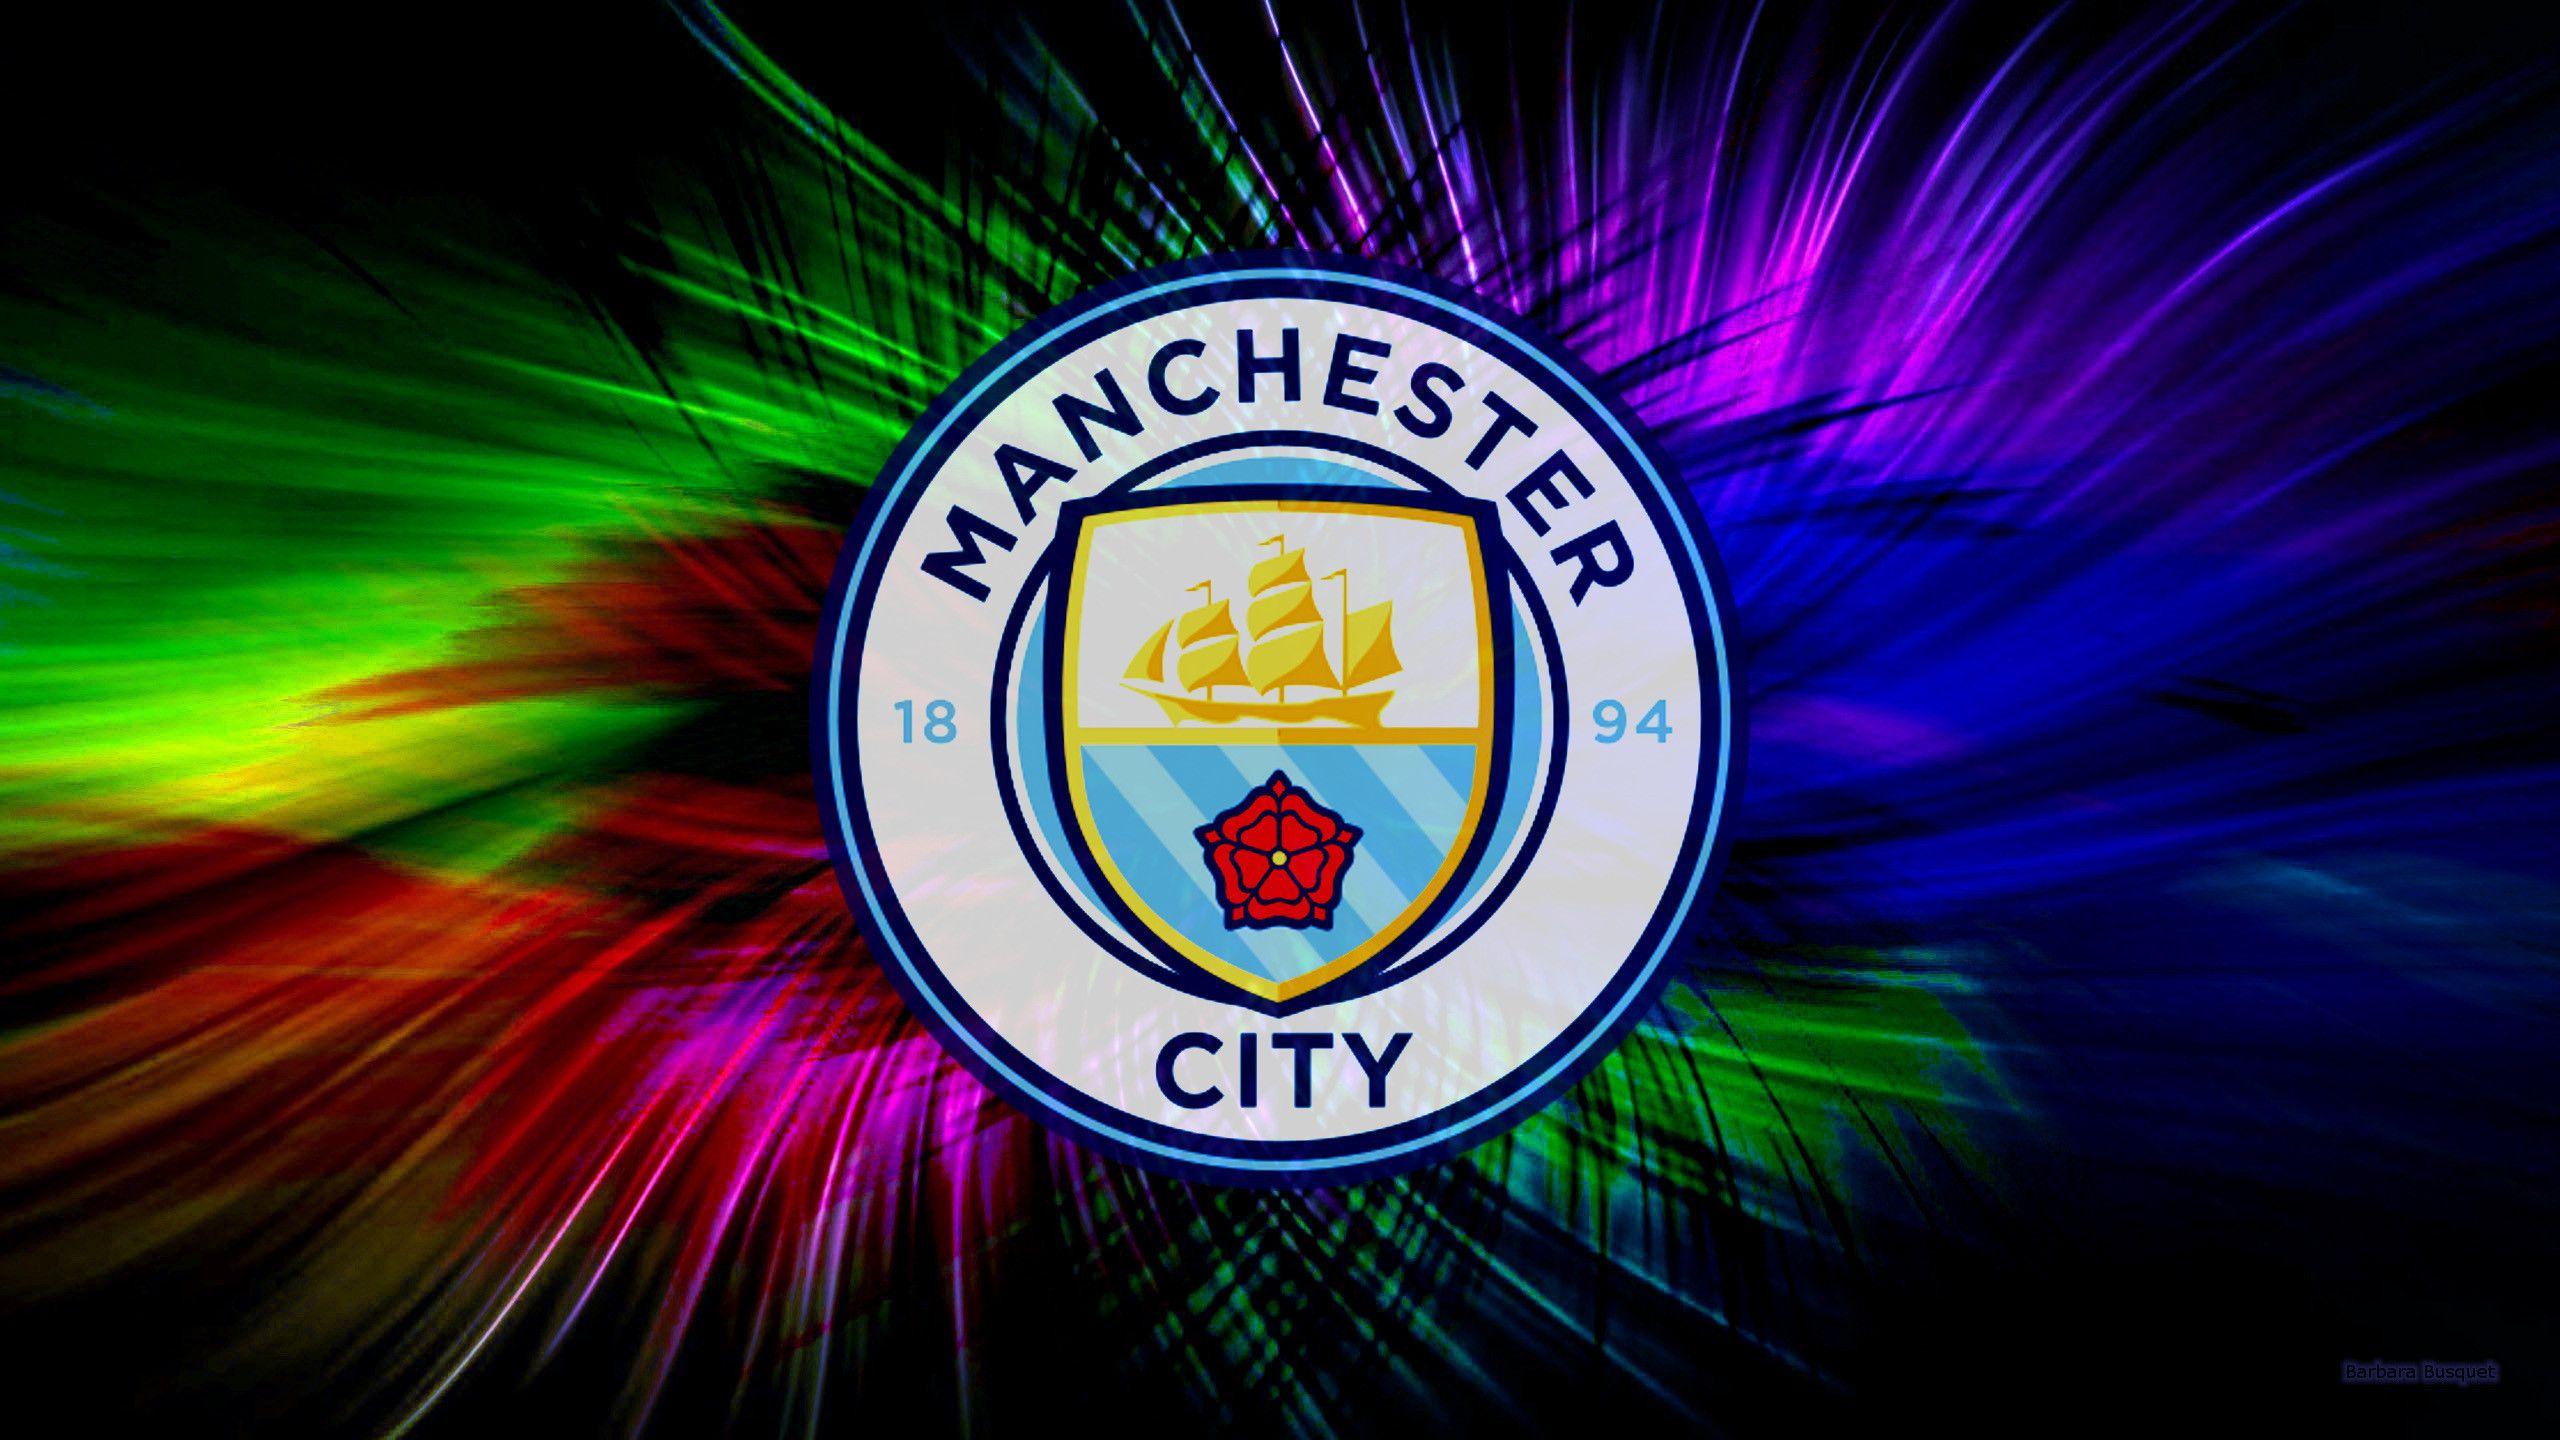 Gudskjelov! 17+ Lister over Manchester City Desktop Wallpaper 2021! All ...